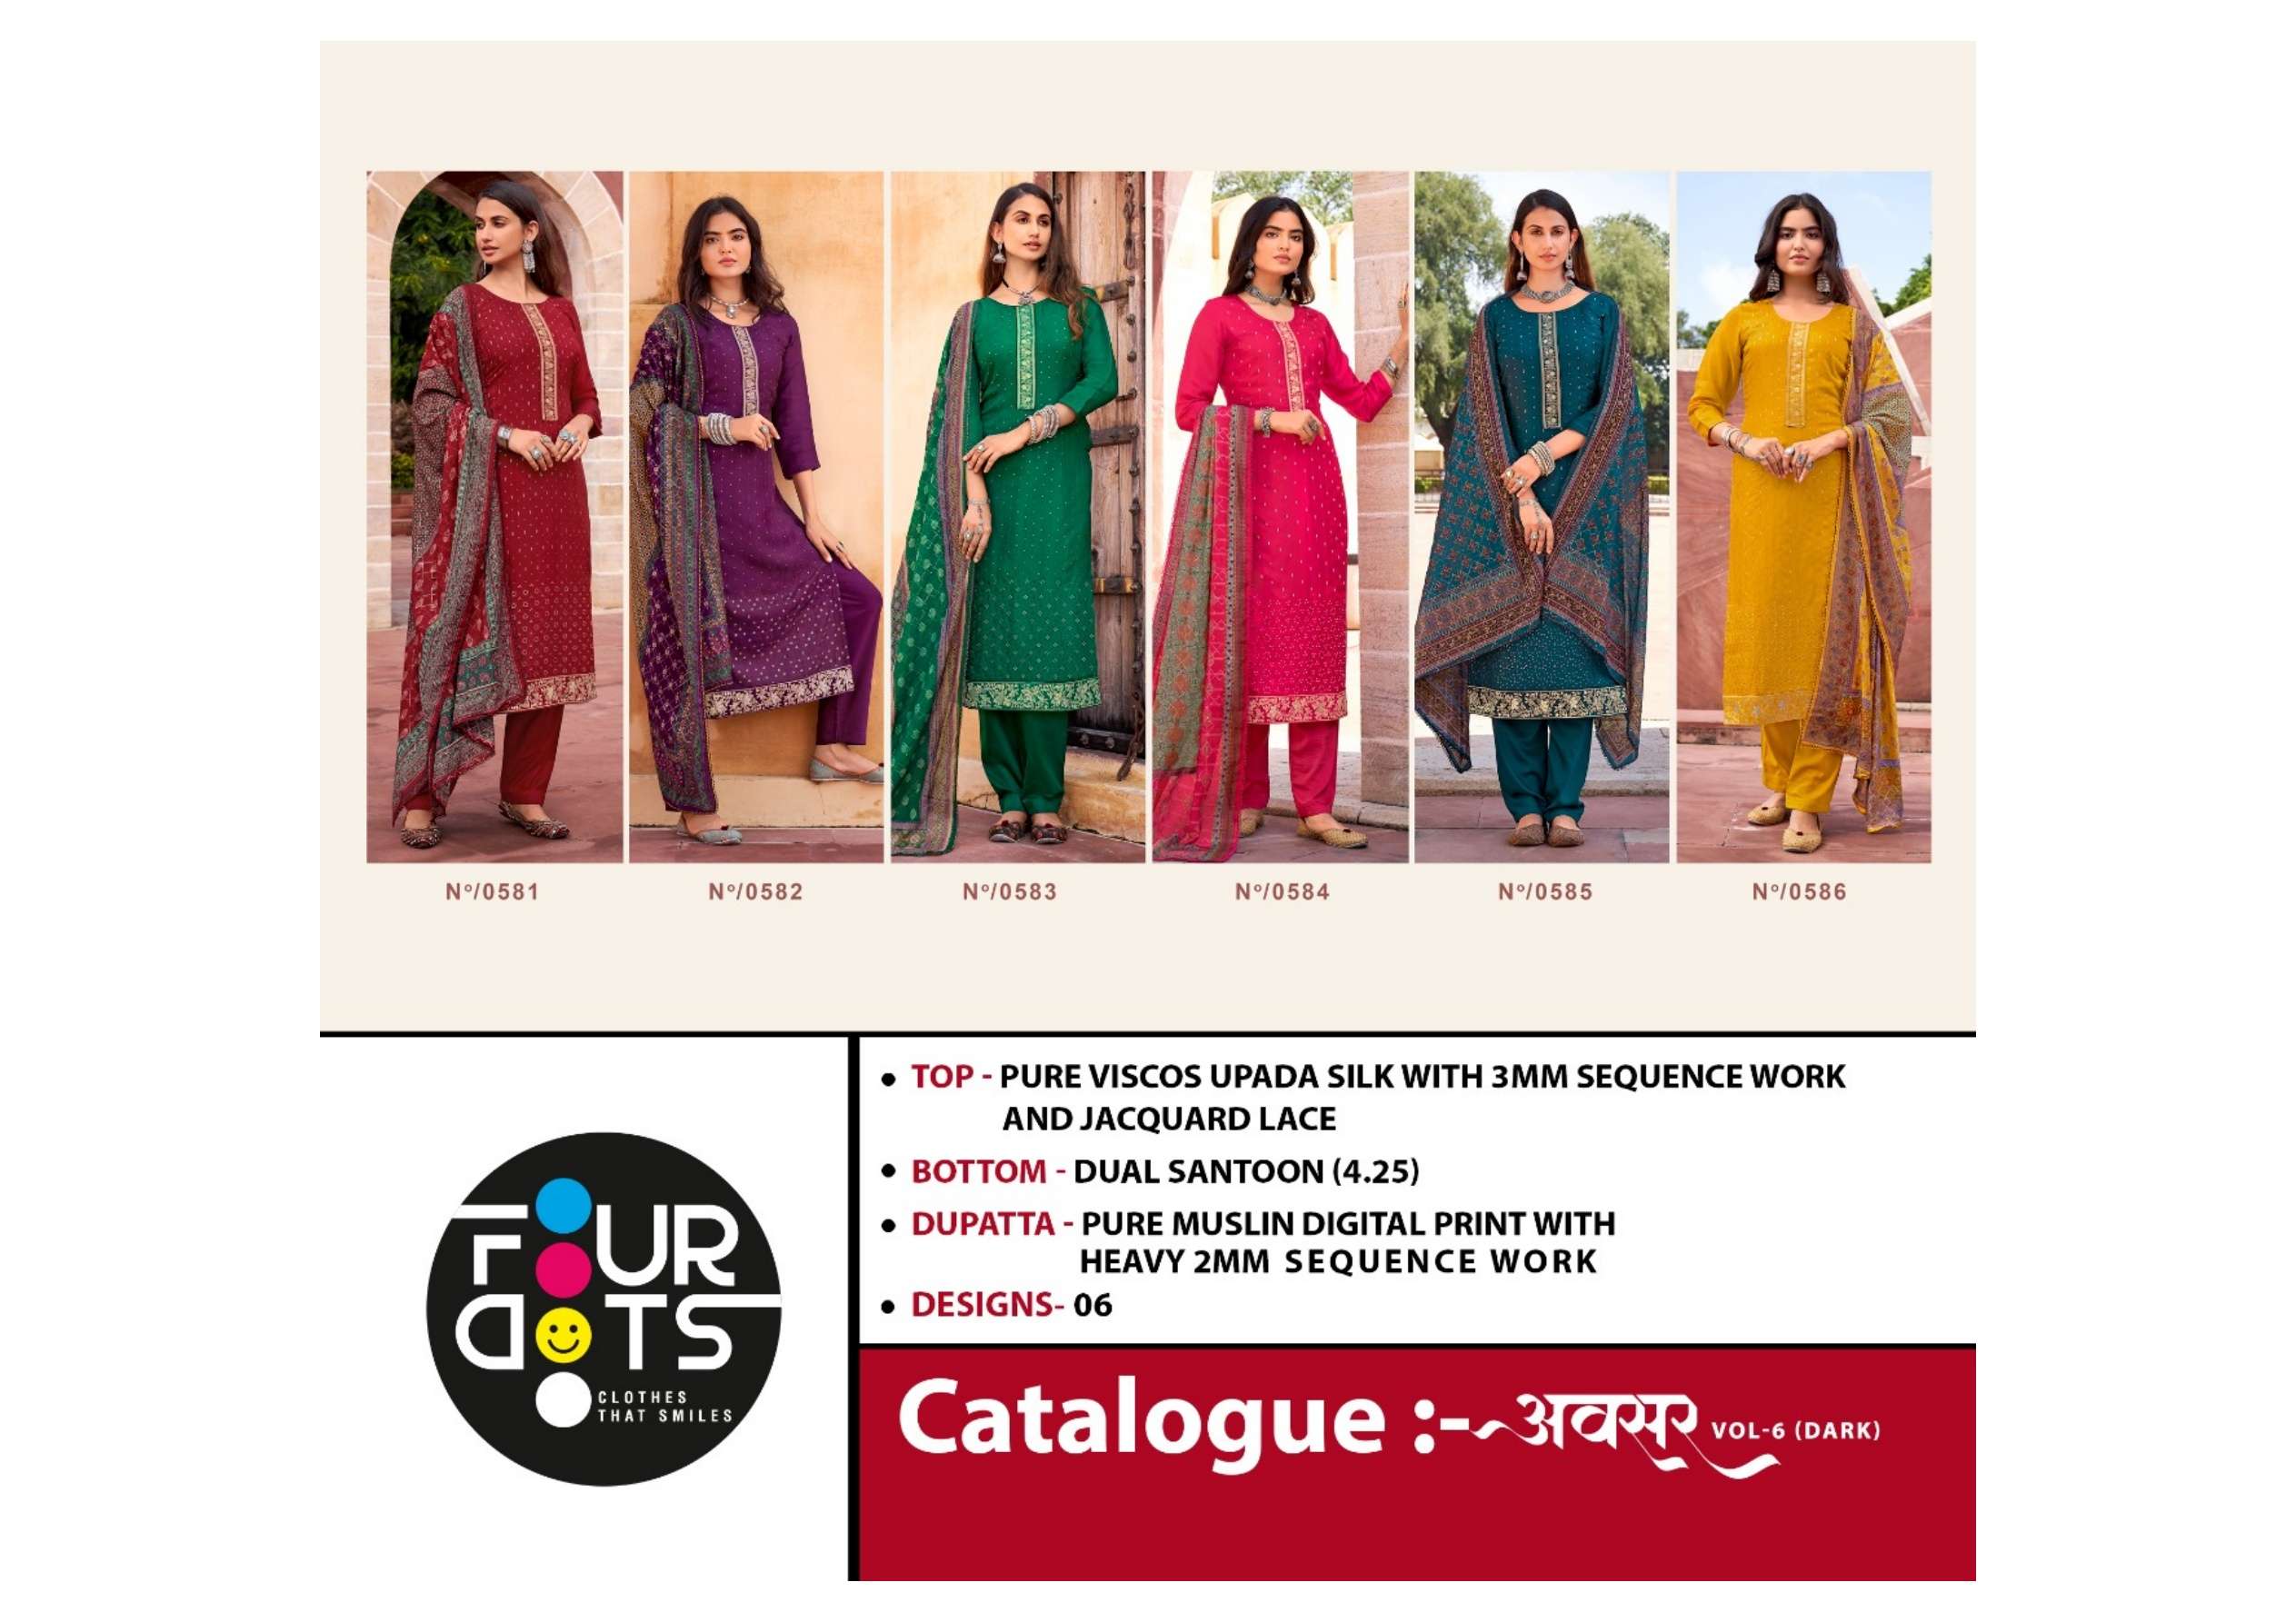 fourdots avsar vol 6 dark matching designer punjabi salwar kameez wholesale price